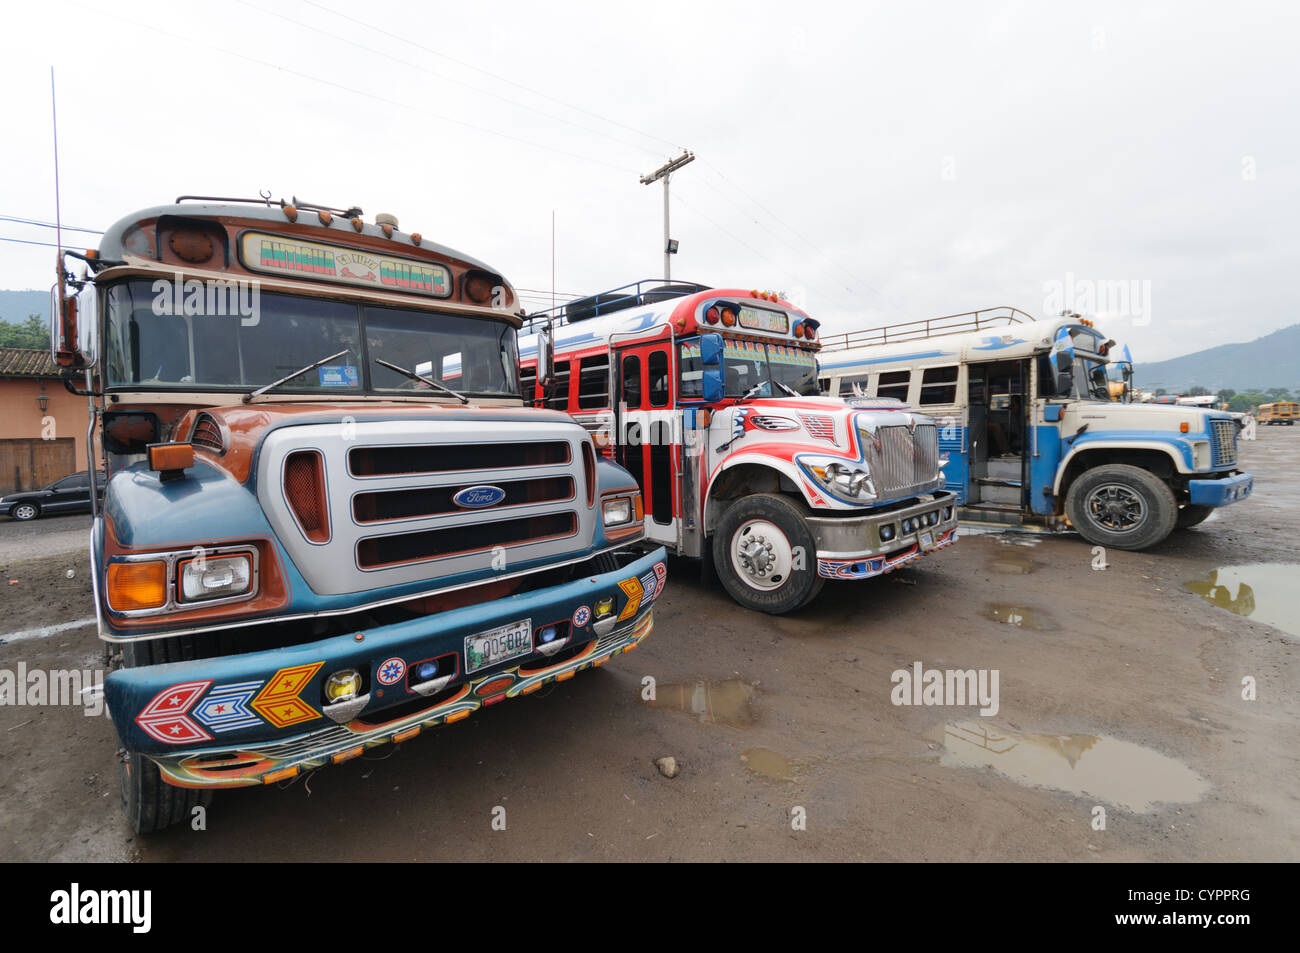 Bunt bemalten Huhn Busse hinter dem Mercado Municipal (Stadtmarkt) in Antigua, Guatemala. Aus diesem umfangreichen zentralen Busbahnhof strahlenförmig der Routen in Guatemala. Oft bunt bemalt, die Huhn-Busse sind nachgerüsteten amerikanische Schulbusse und bieten ein günstiges Transportmittel im ganzen Land. Stockfoto